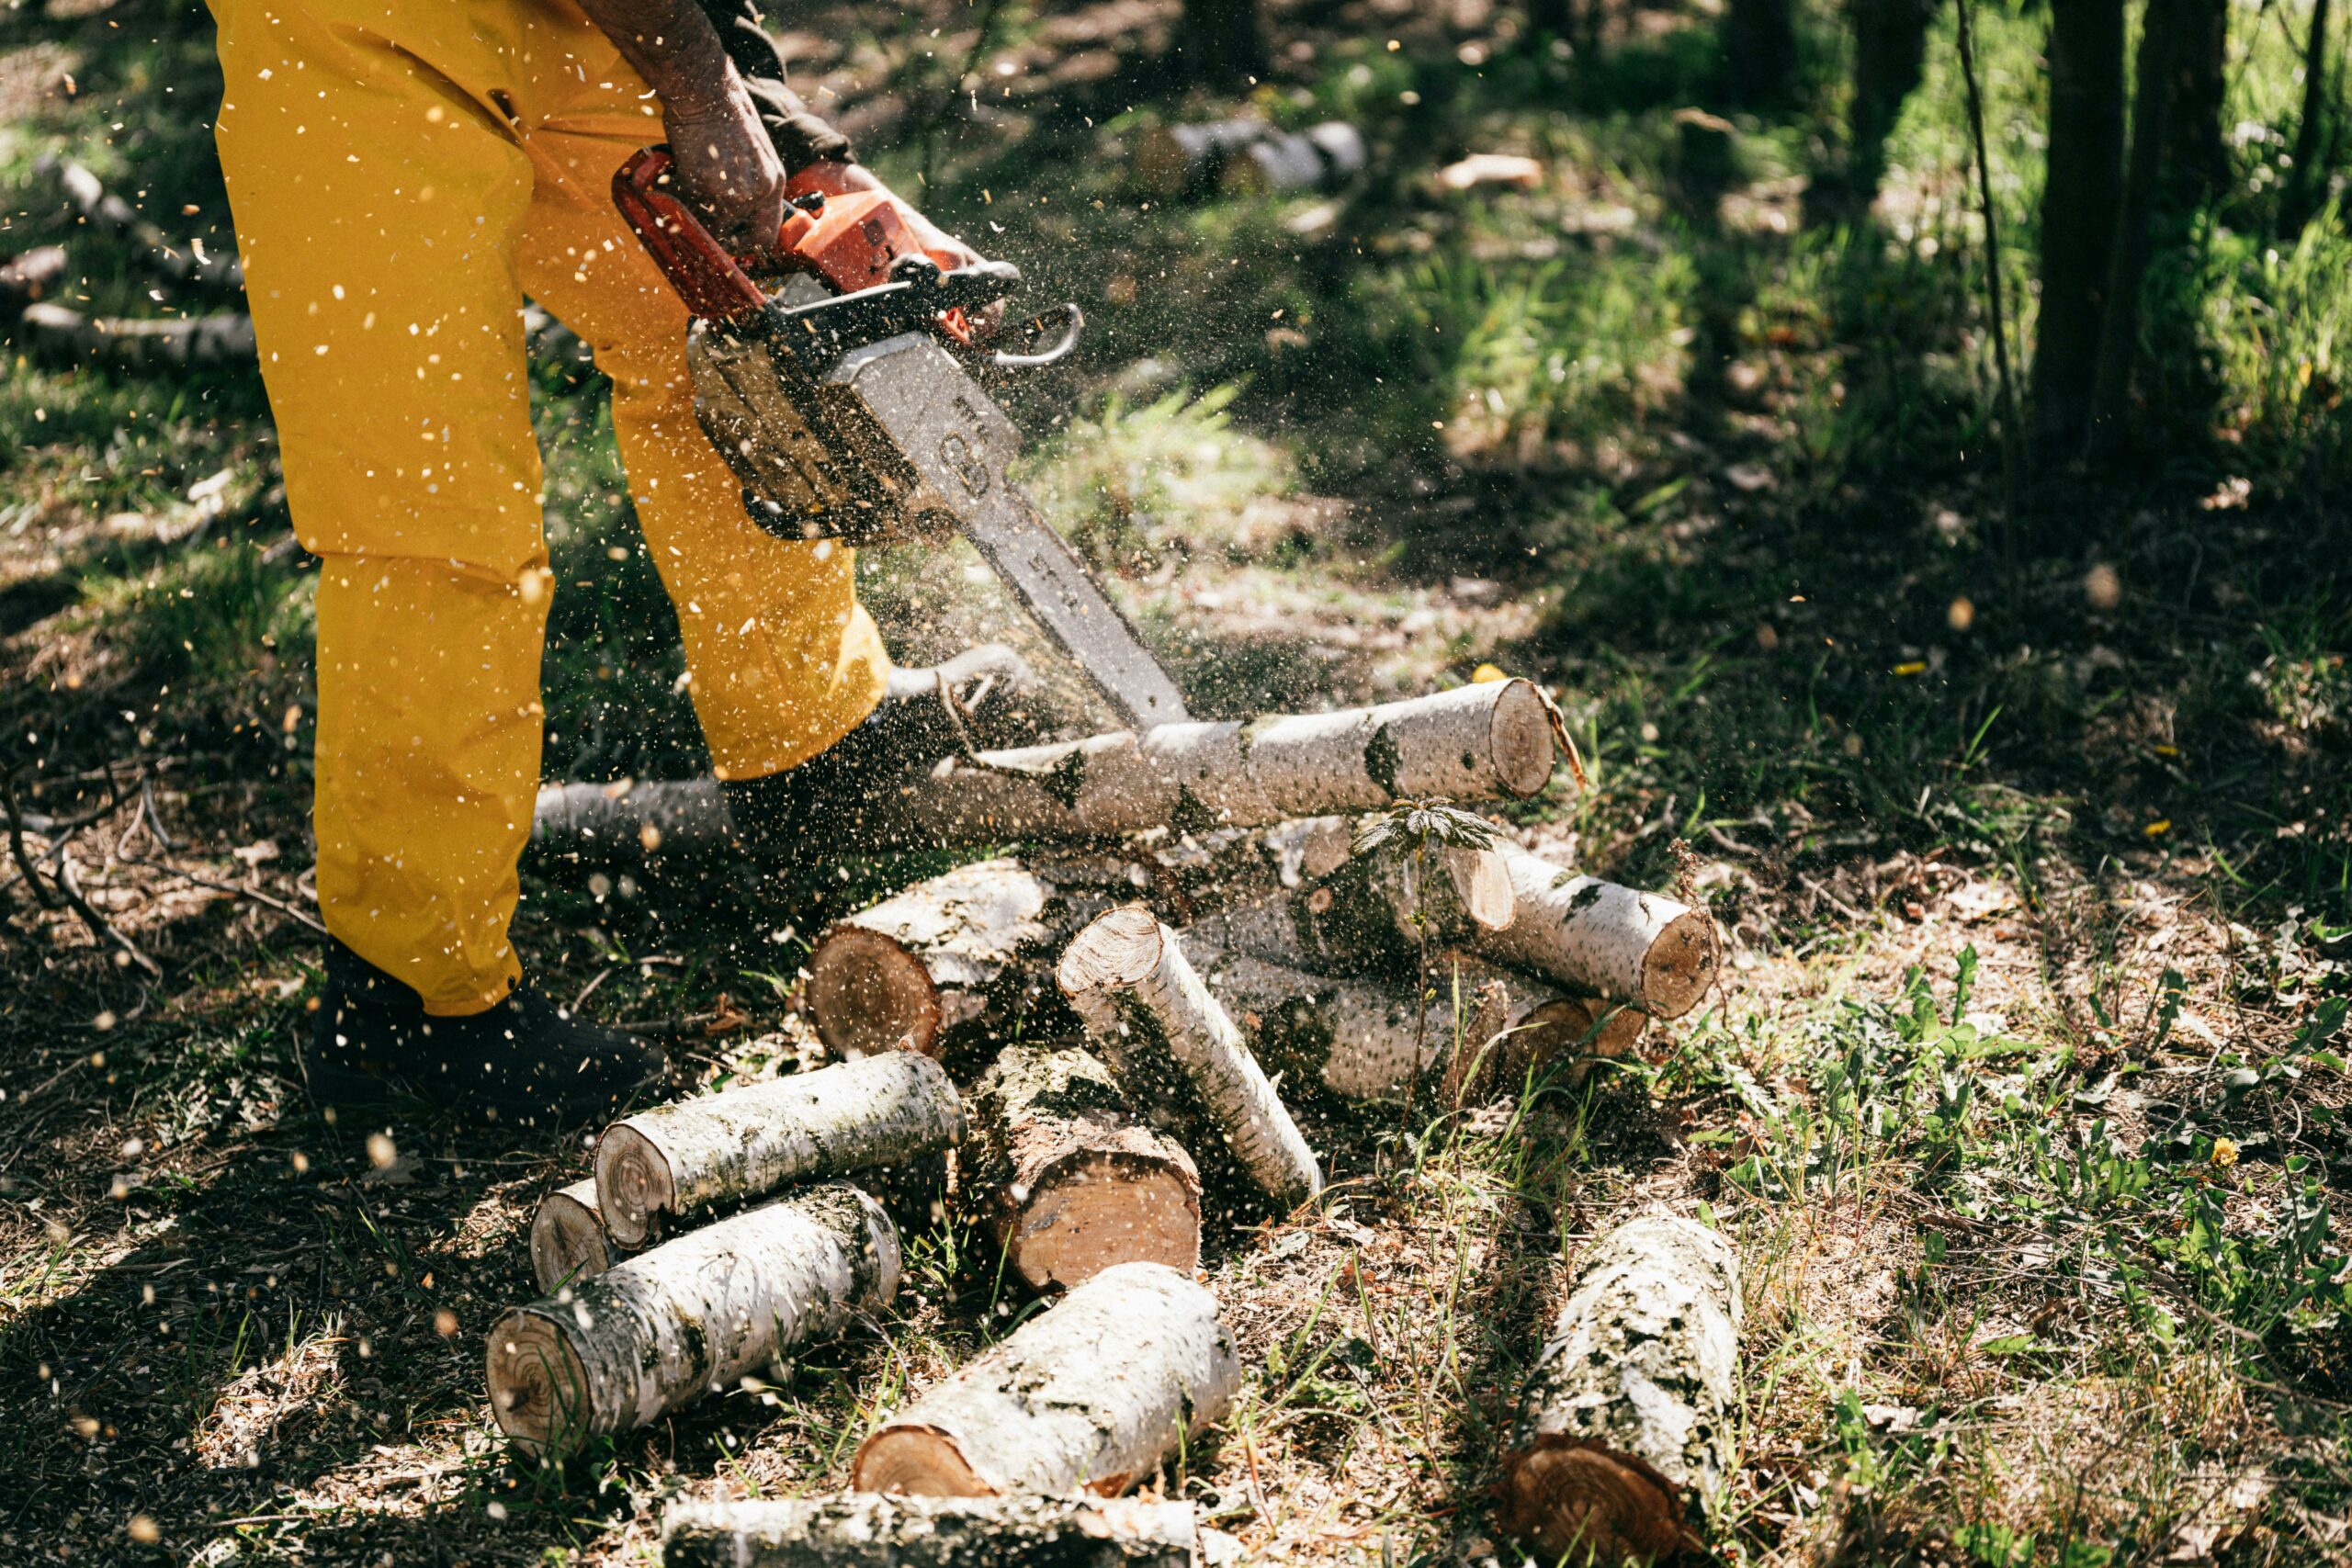 Un bûcheron en pantalon jaune utilisant une tronçonneuse pour couper des troncs d'arbre en morceaux dans une forêt, avec des copeaux de bois volant autour.